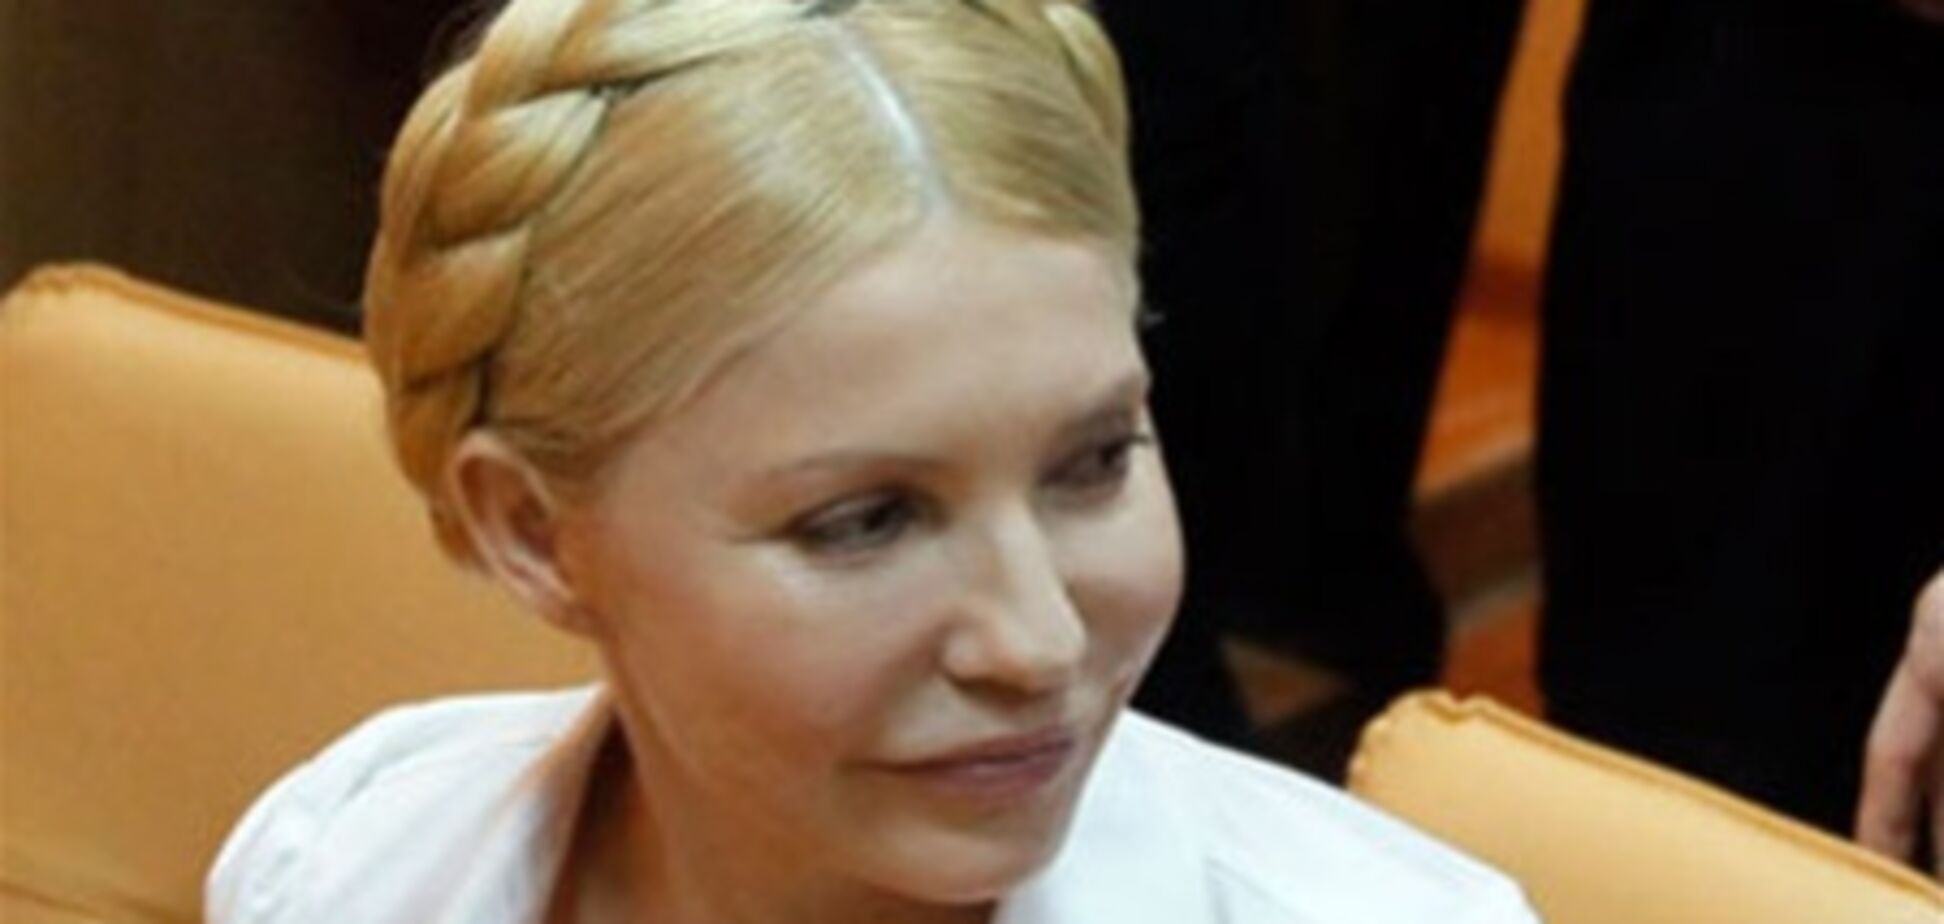 Тимошенко вынесут приговор по делу ЕЭСУ до 15 мая - защита